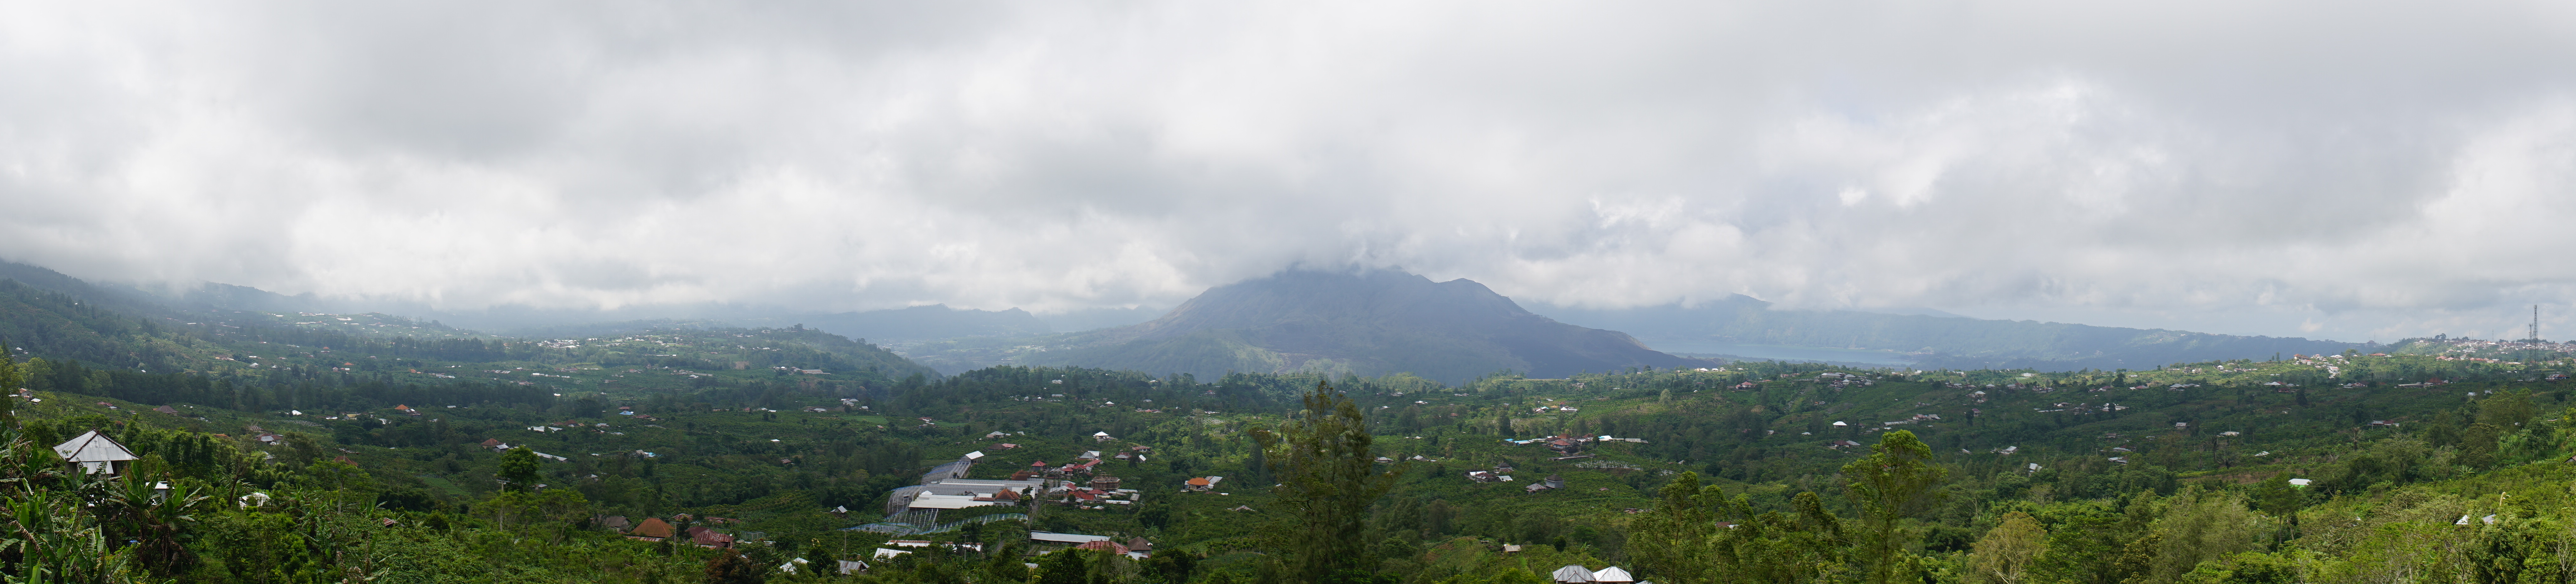 Panorama: Mount Batur von Kintamani auf Bali aus gesehen